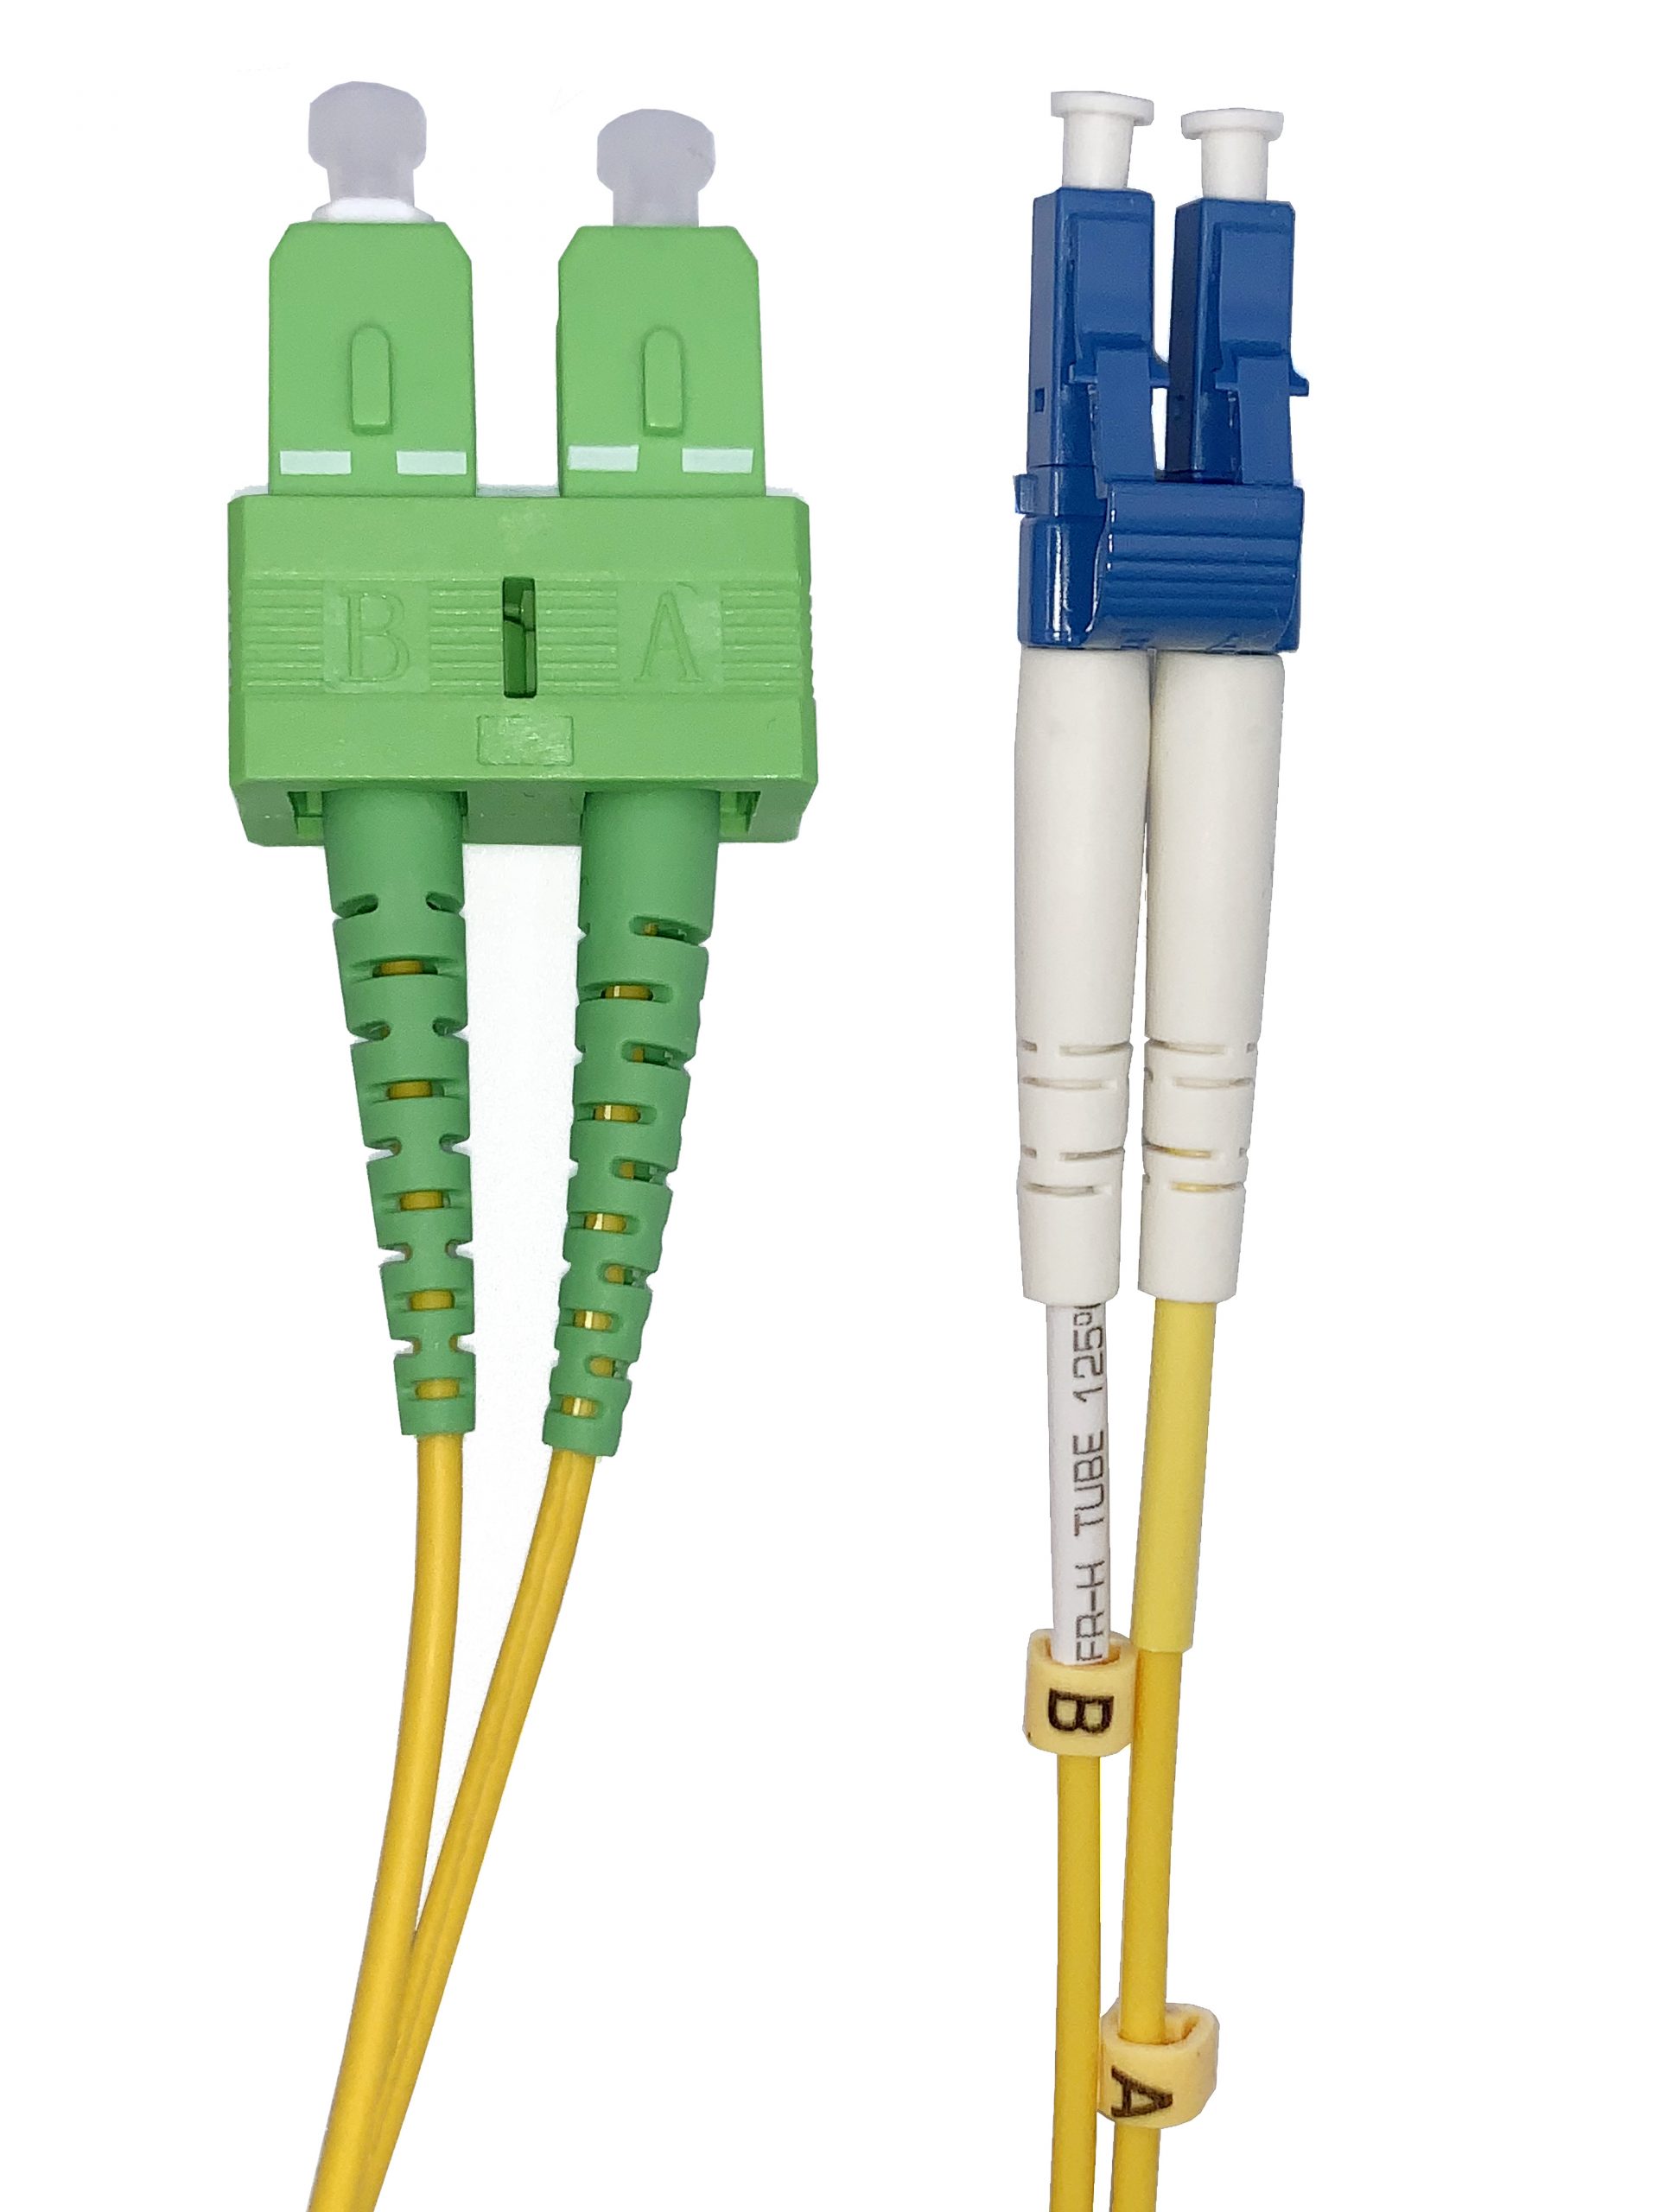 Pigtail OS2 SC/APC LSOH 12 connecteurs (2M) - Câble fibre Optique -  Garantie 3 ans LDLC